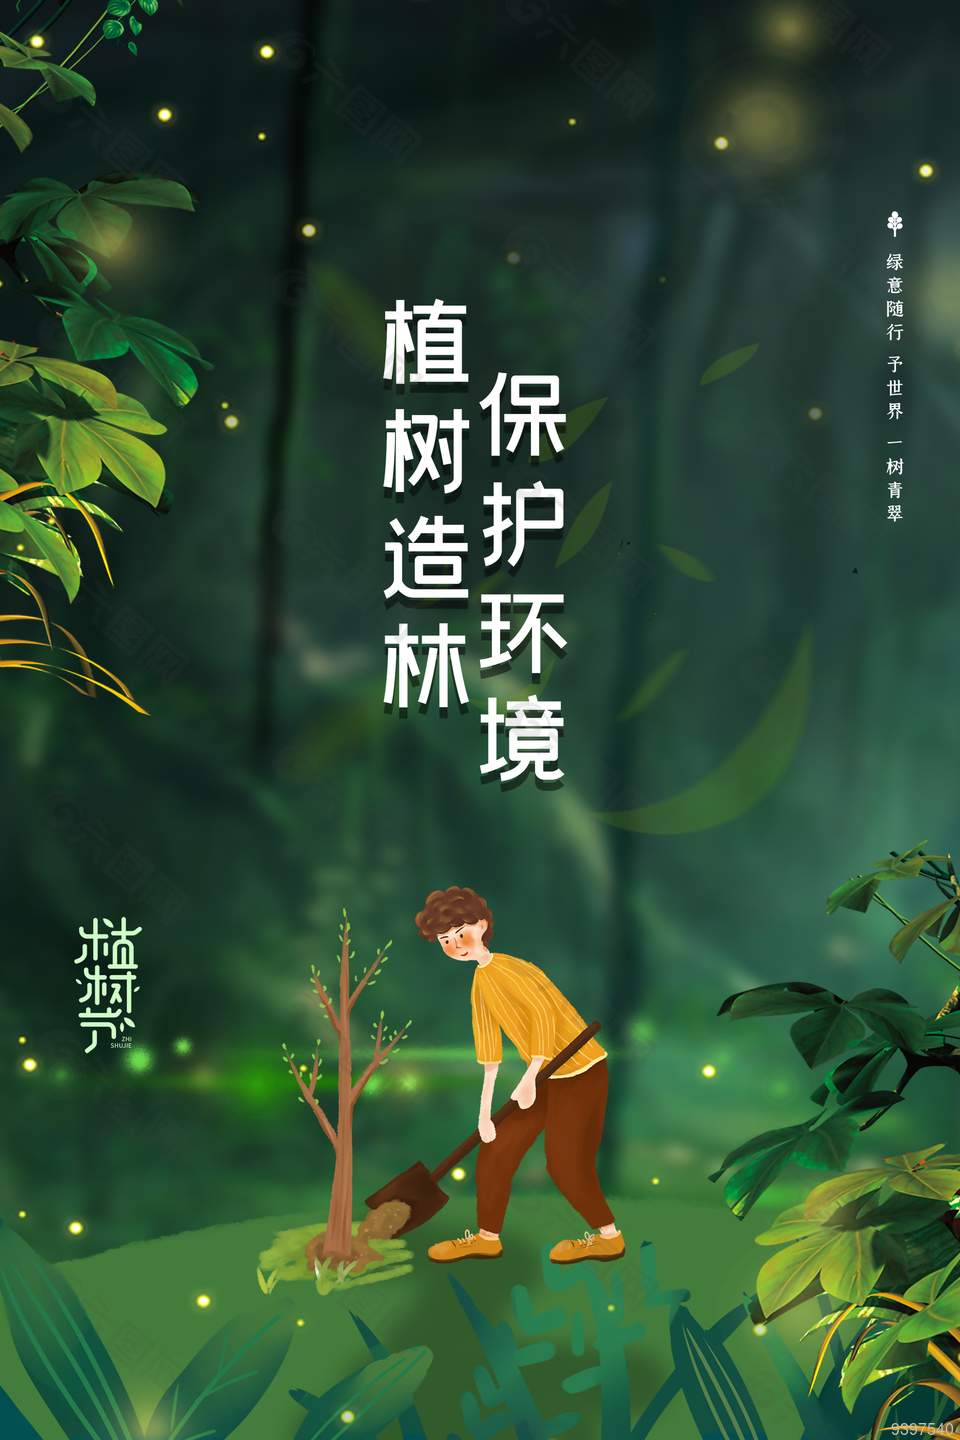 植树造林保护环境世界环保日节日海报下载